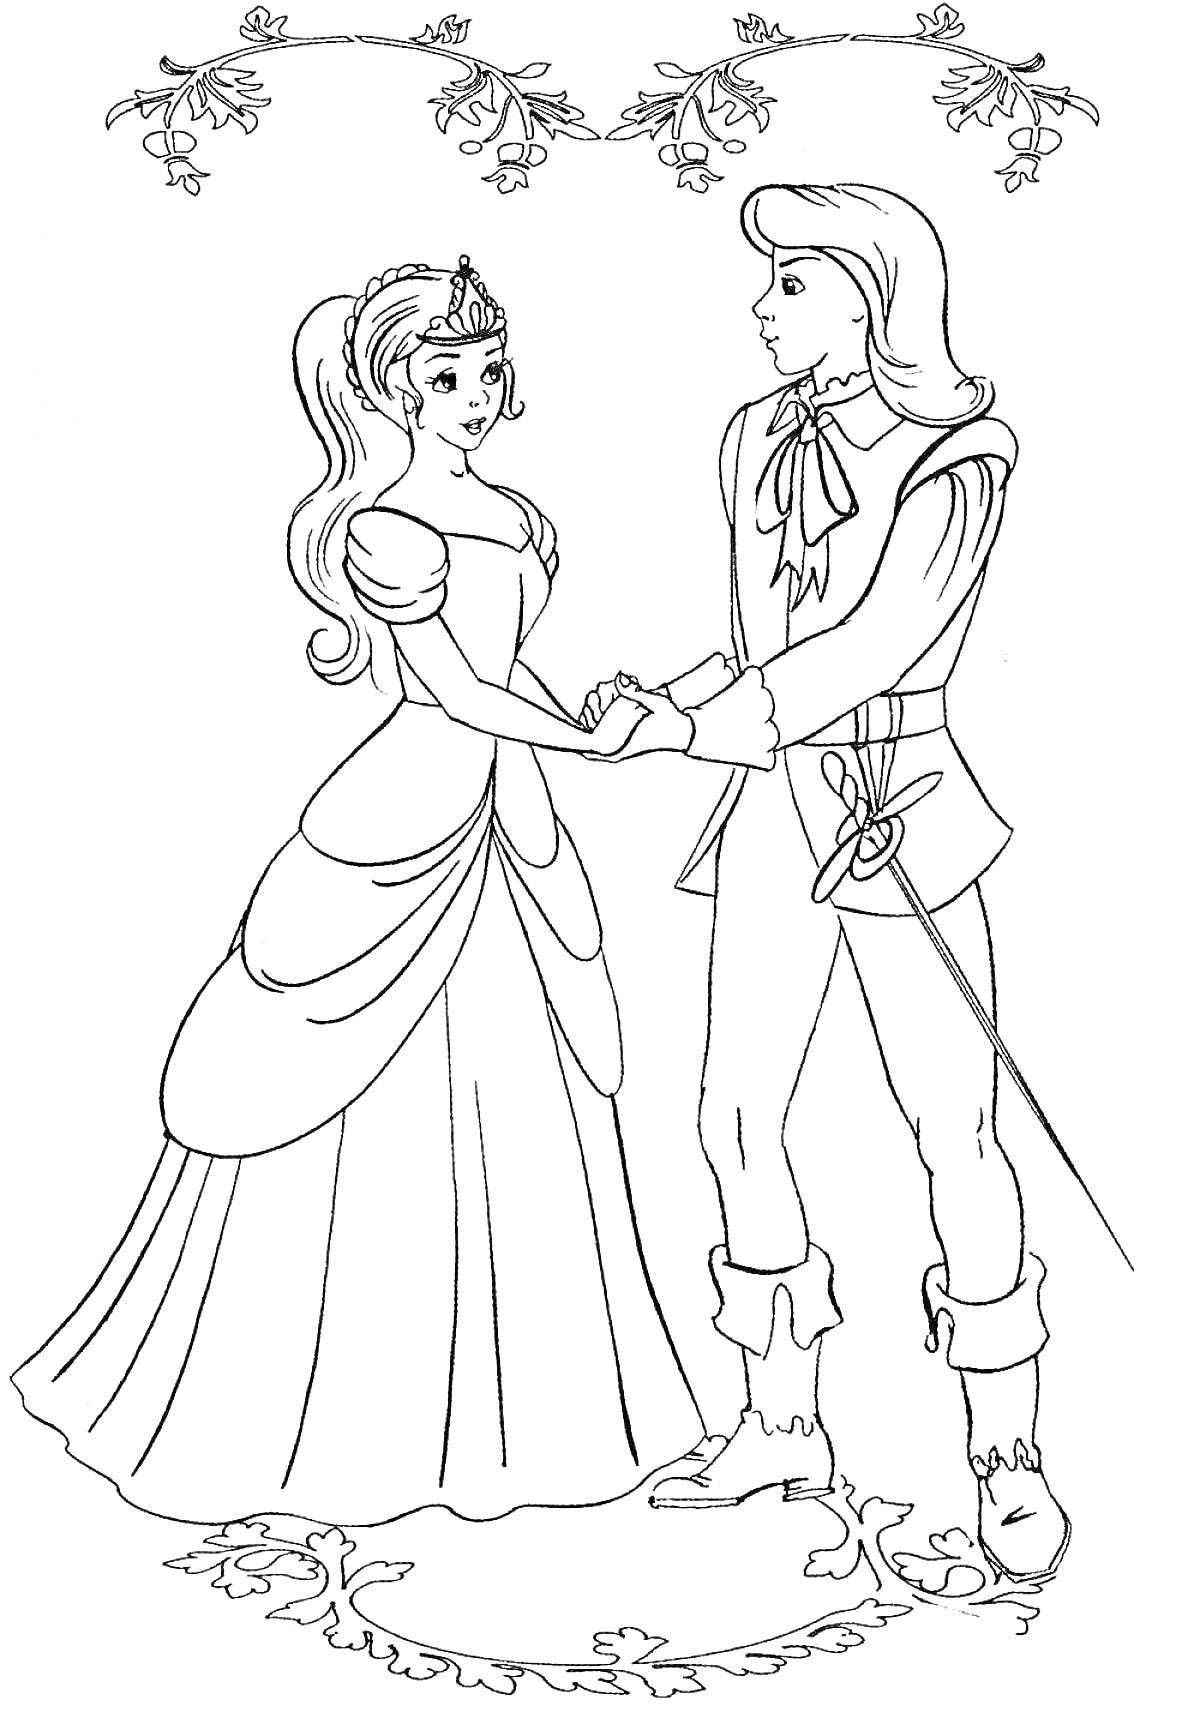 Раскраска Принц и принцесса под аркой цветущих веток и на узорчатой дорожке